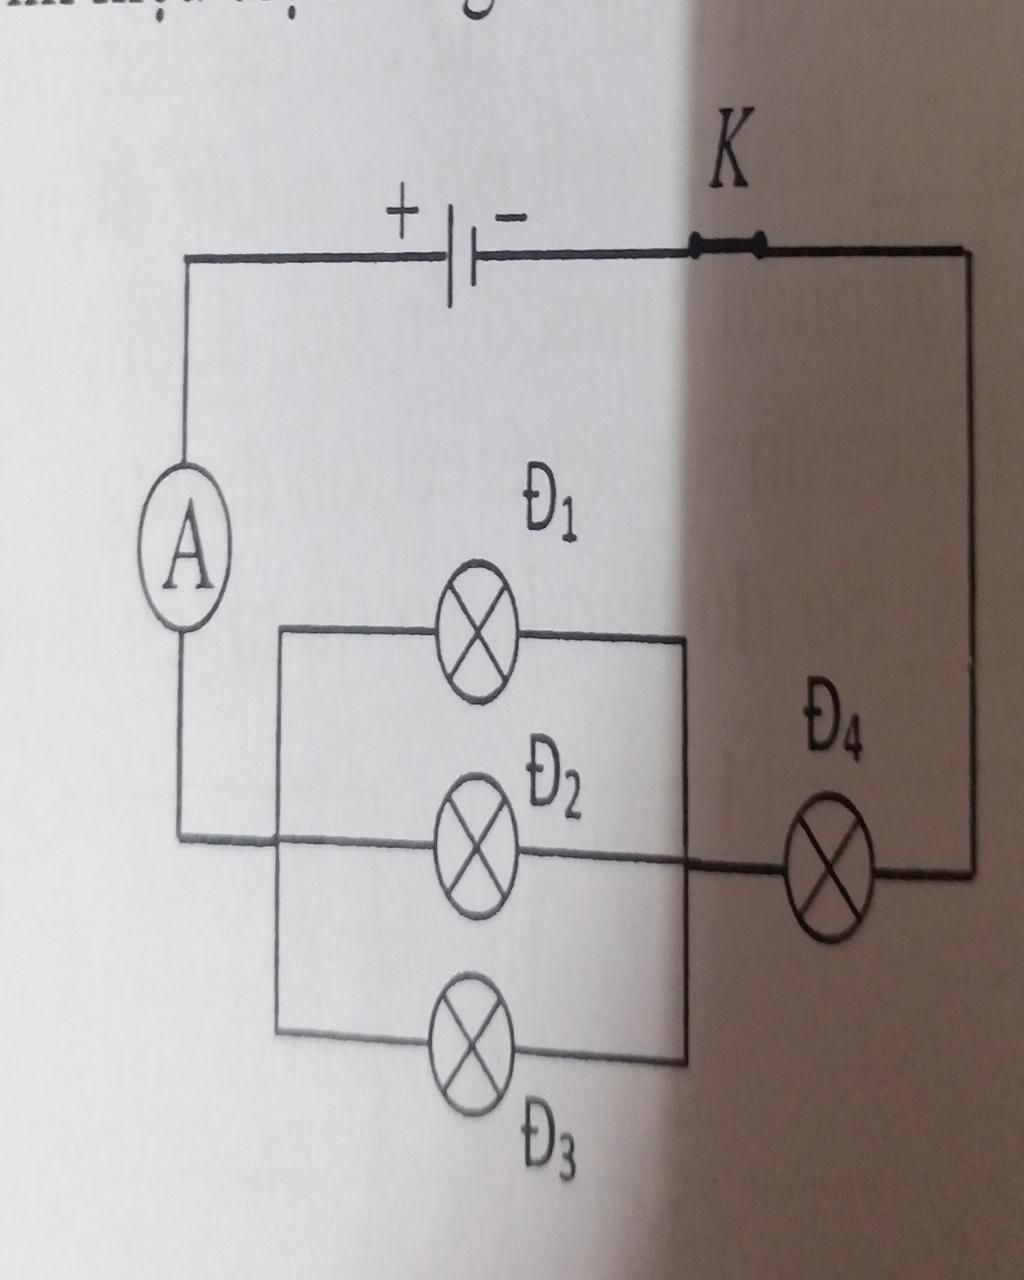 Cho mạch điện như hình vẽ ampe kế có điện trở rất nhỏ vôn kế có điện trở  vô cùng lớn Hiệu điện thế giữa hai điểm AB không đổi bằng 18V